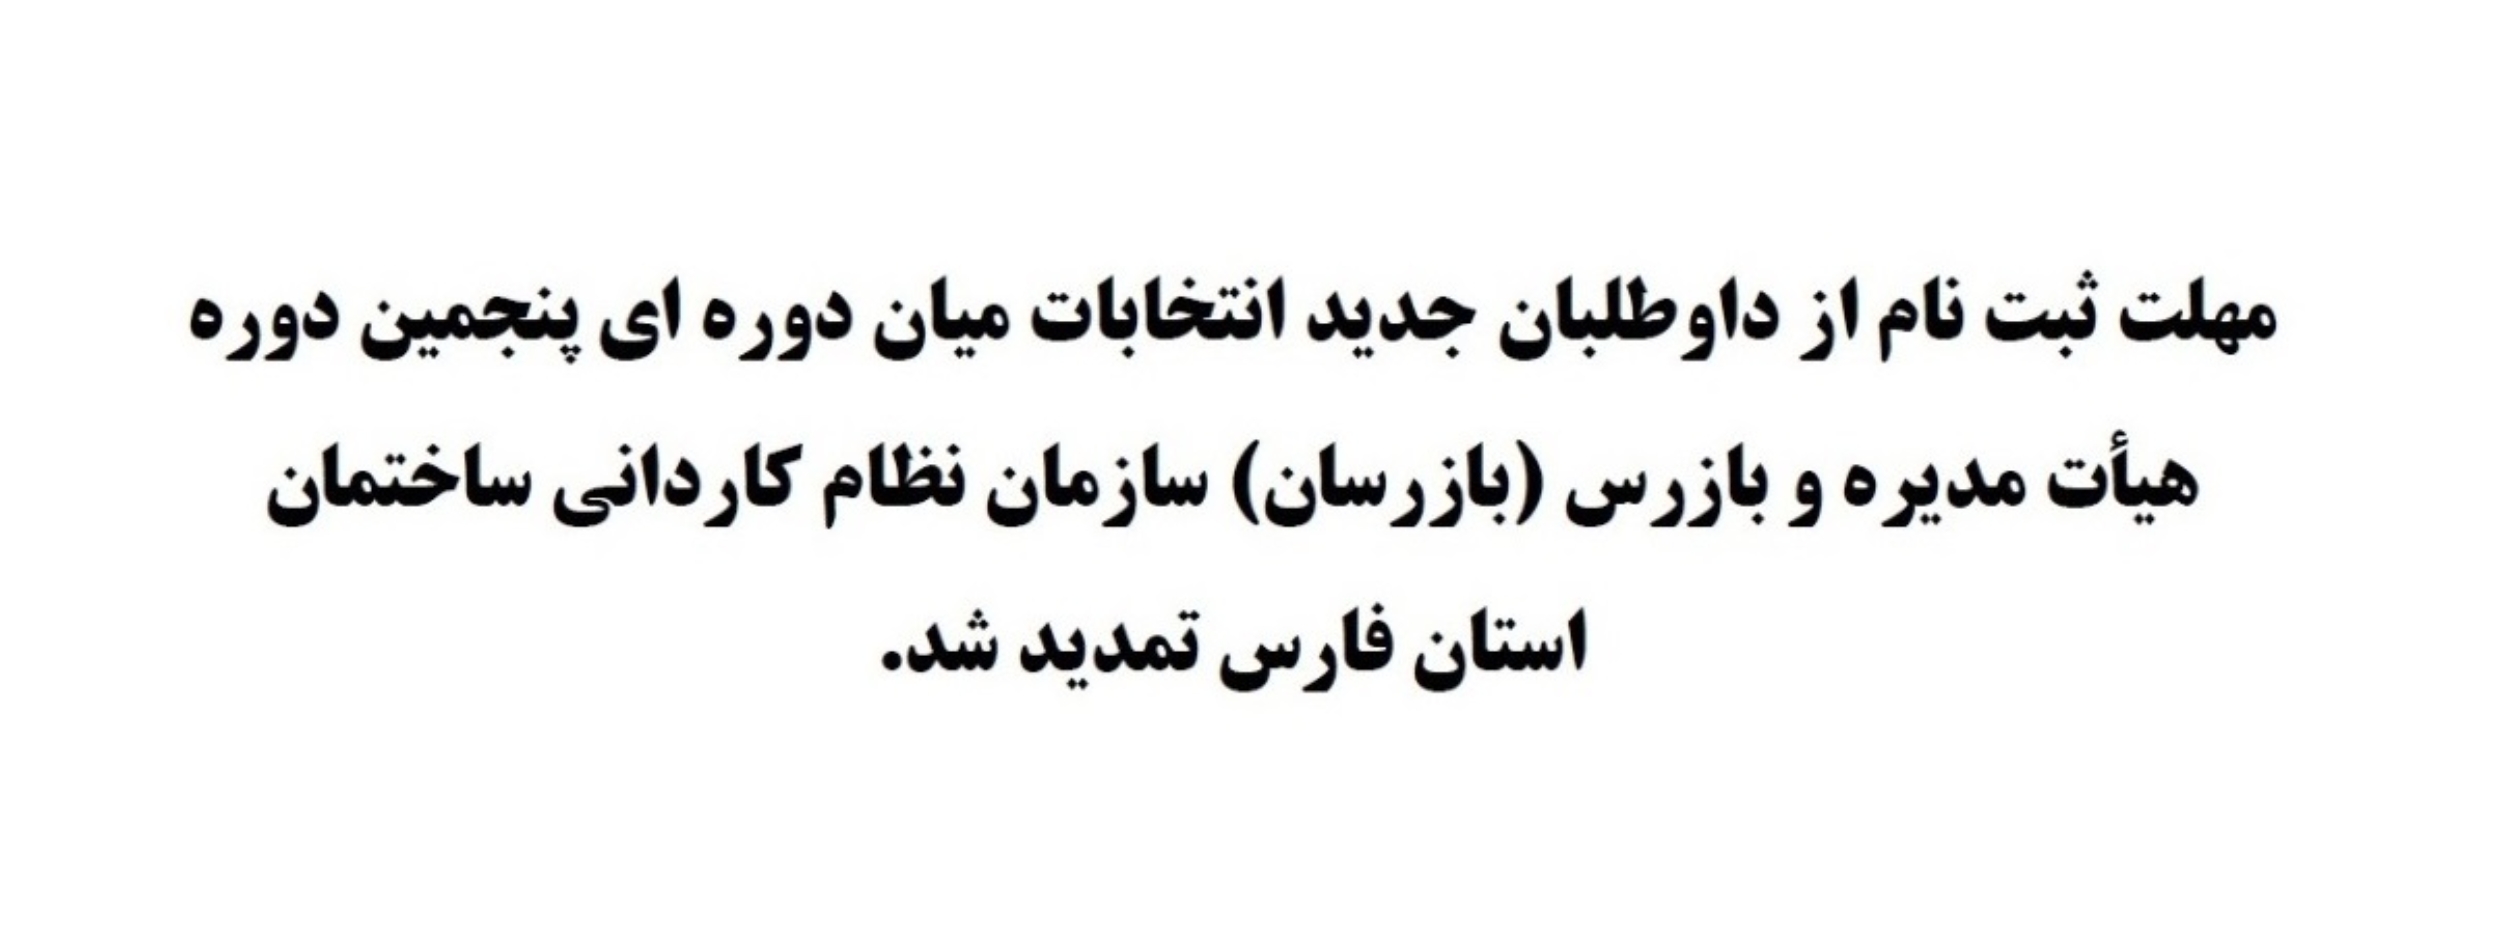 قابل توجه اعضاء محترم سازمان نظام کاردانی ساختمان استان فارس